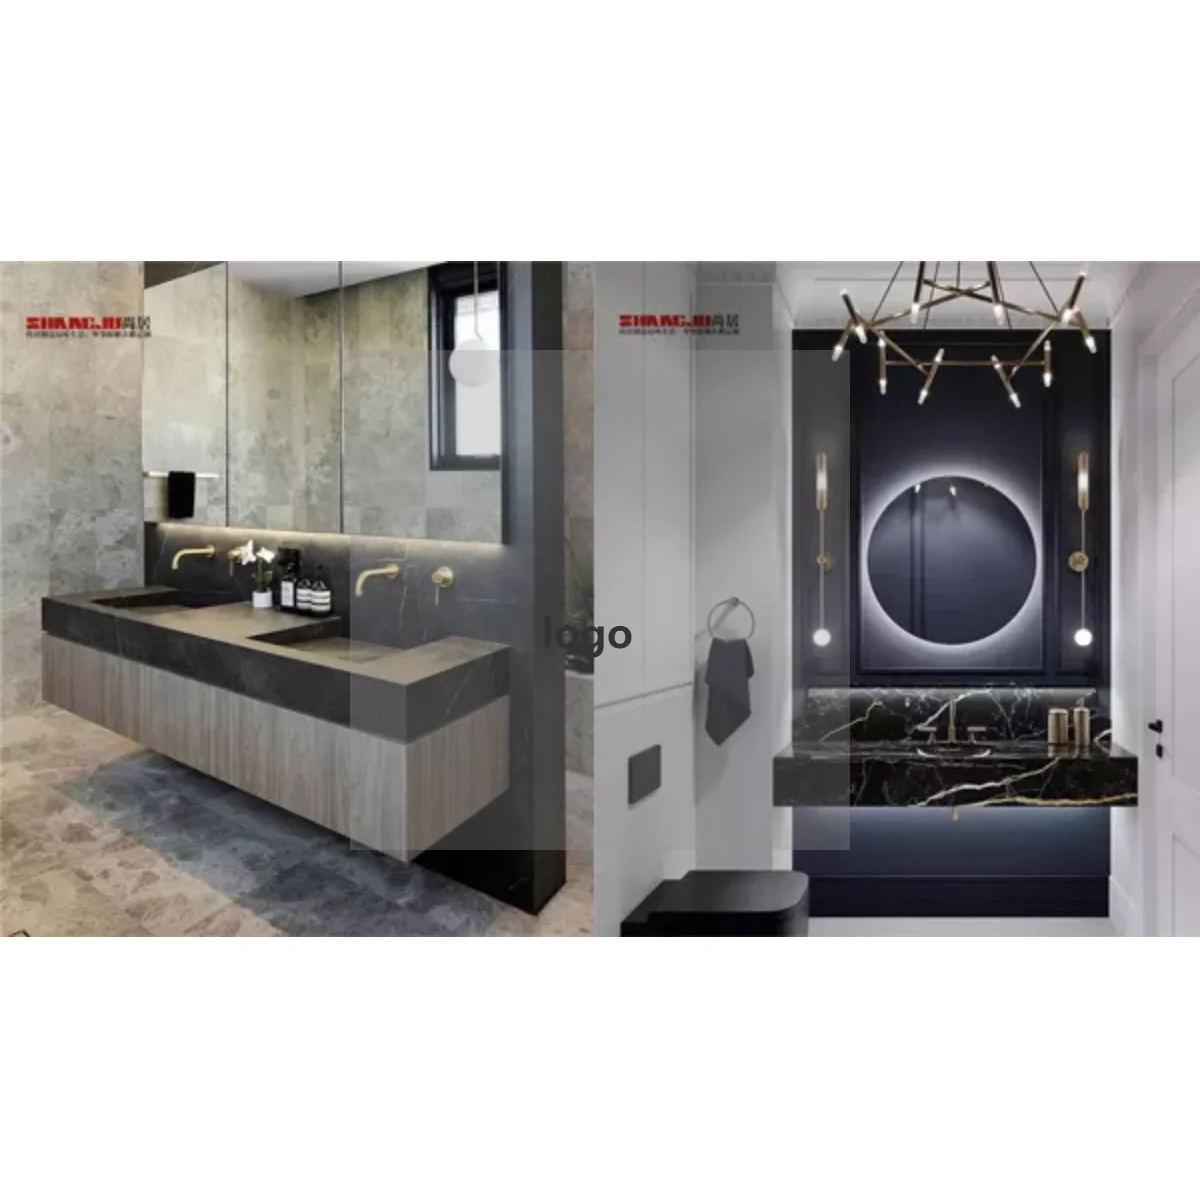 104 65 72 Inch Floating Bathroom Vanity With Mirror Lights Modern Style Small Bathroom Vanities Buy Bathroom Vanities